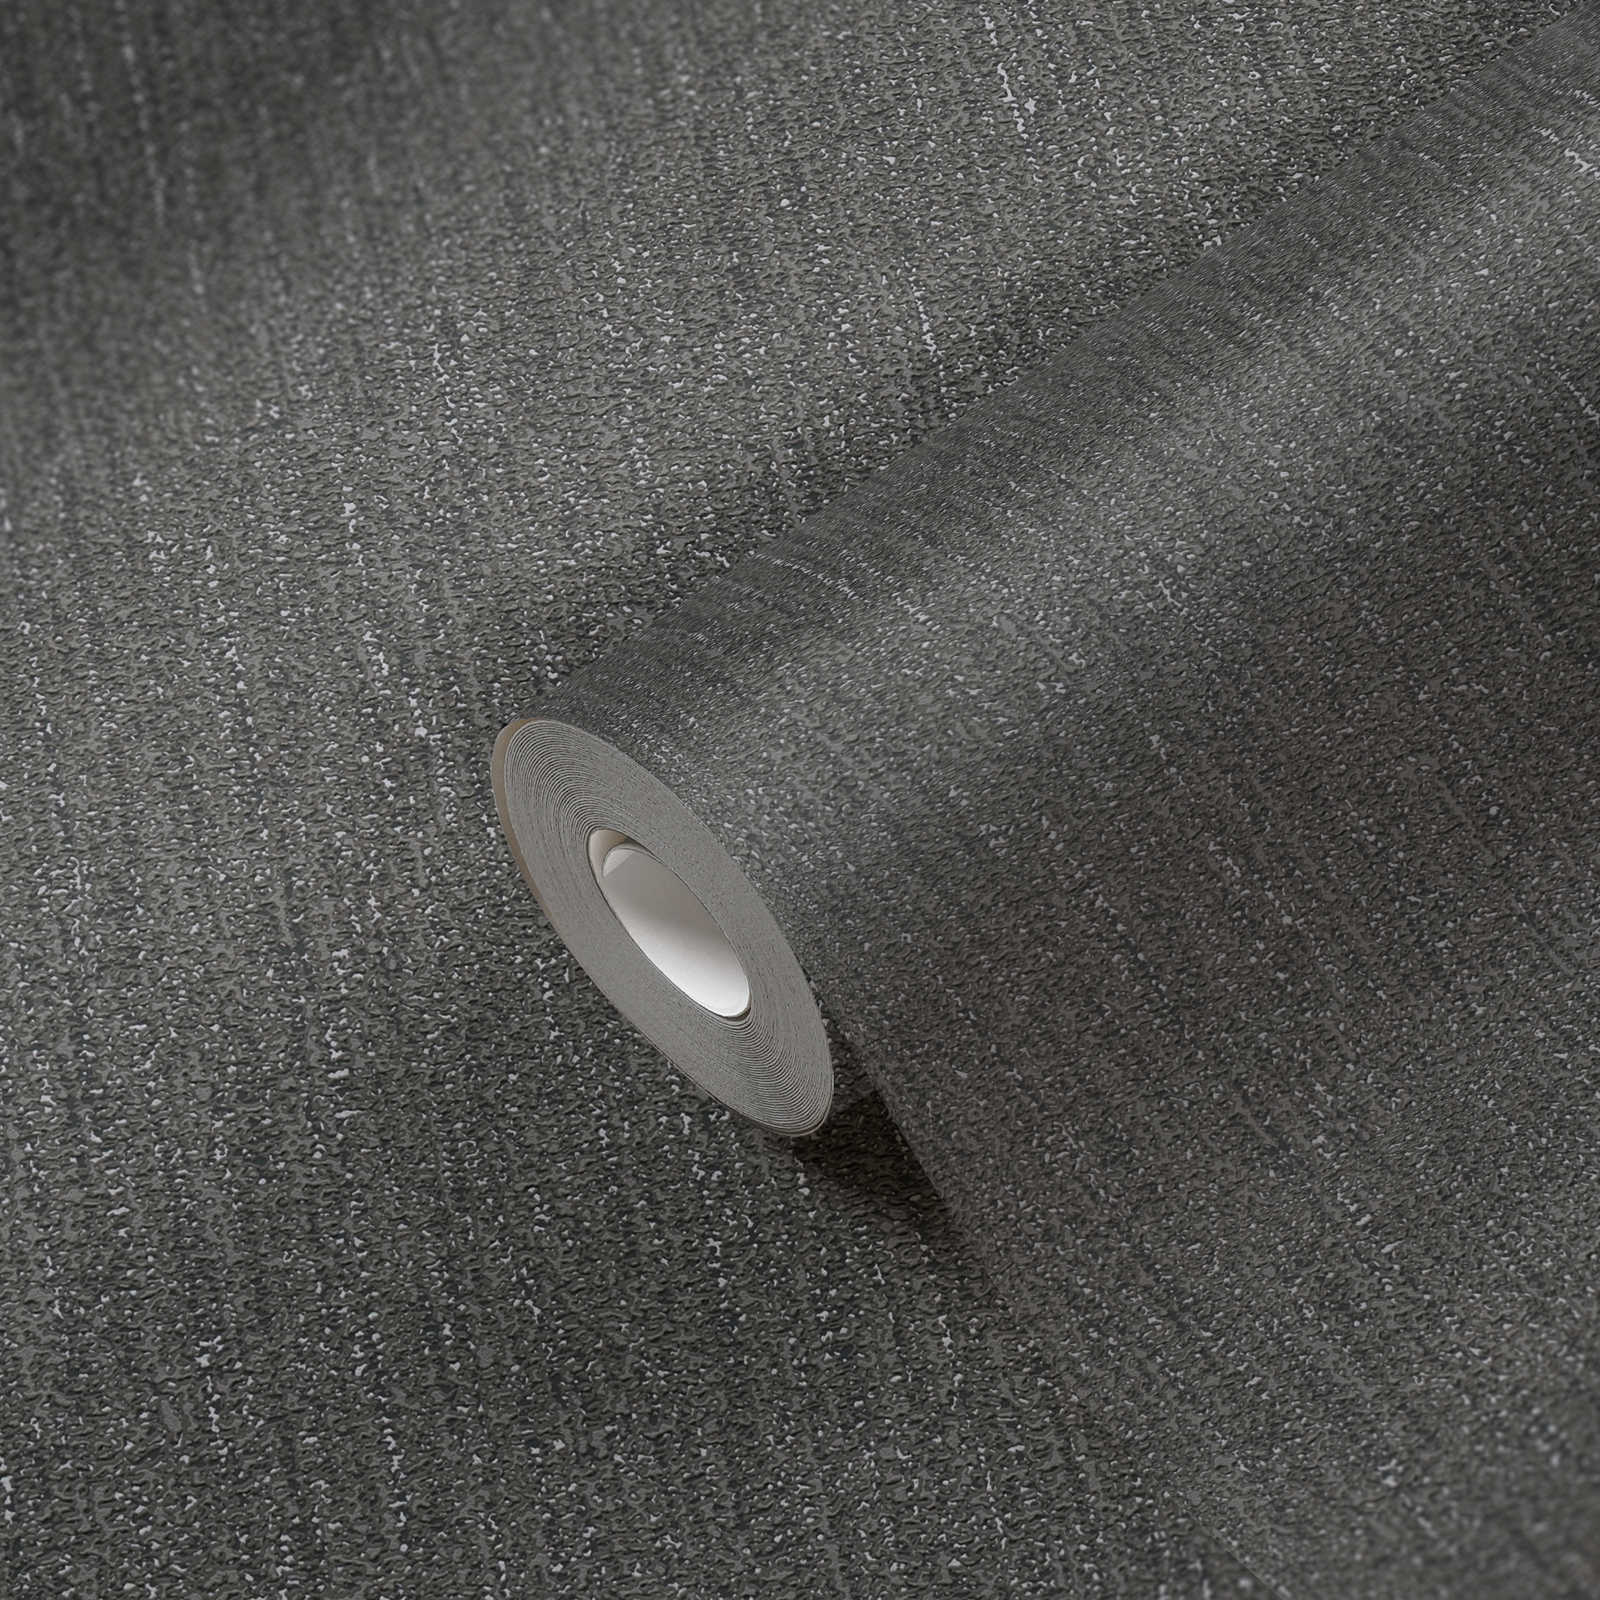             Licht glanzend behang met stofstructuur - zwart, grijs, zilver
        